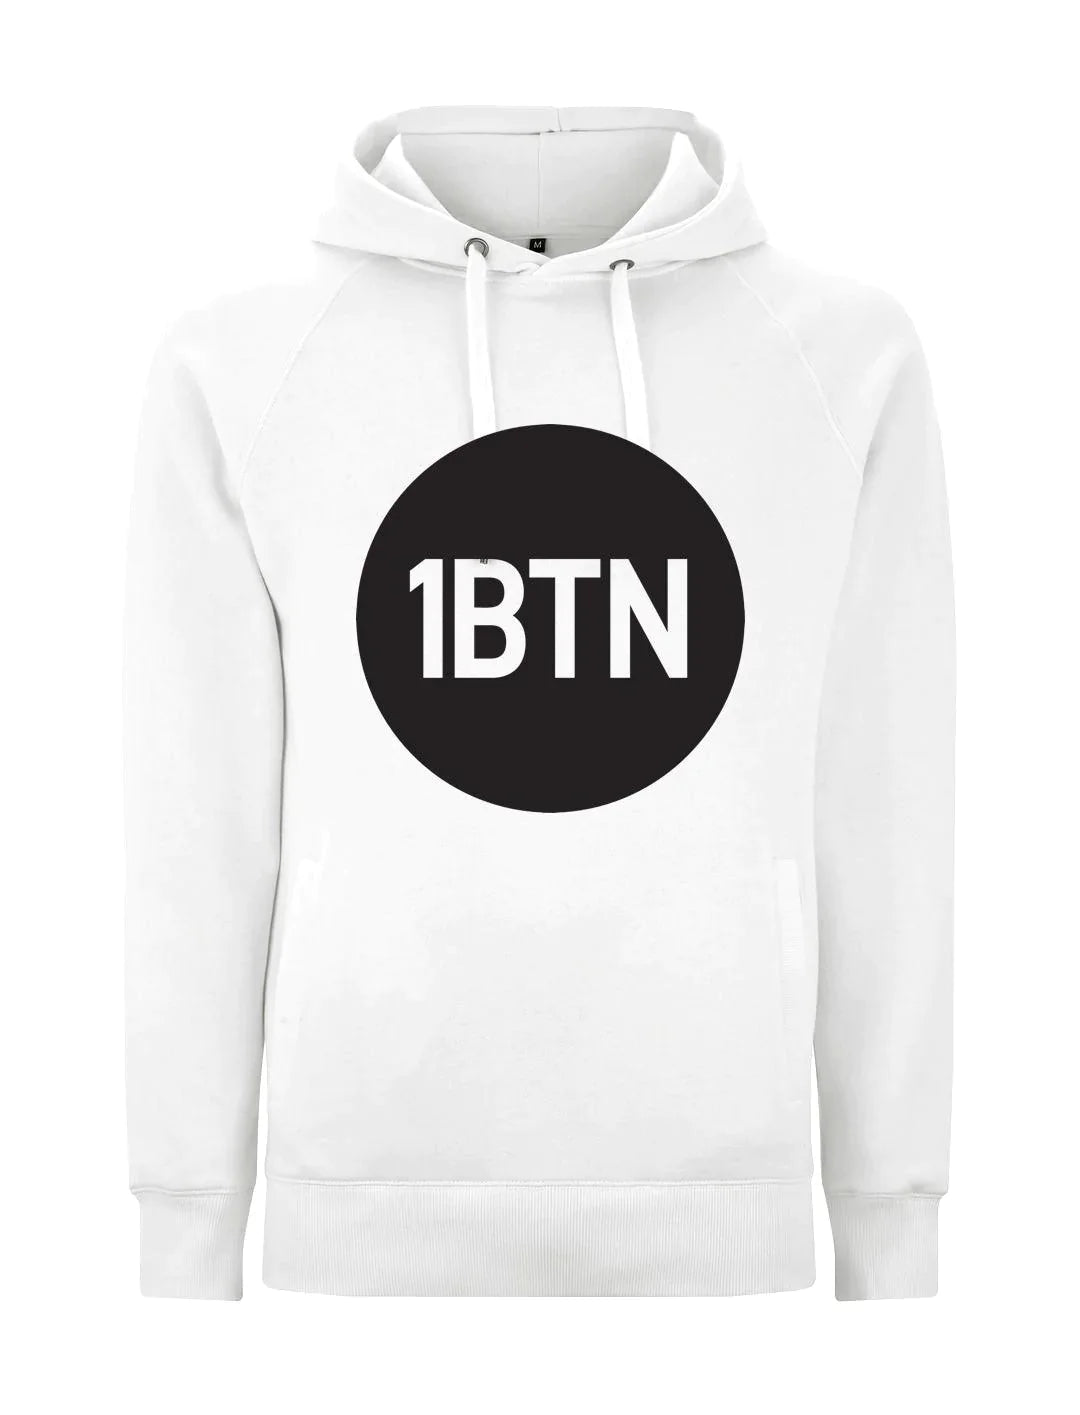 1BTN LARGE LOGO: Hoodie Official Merchandise of 1BTN.FM (5 Colour Options) - SOUND IS COLOUR